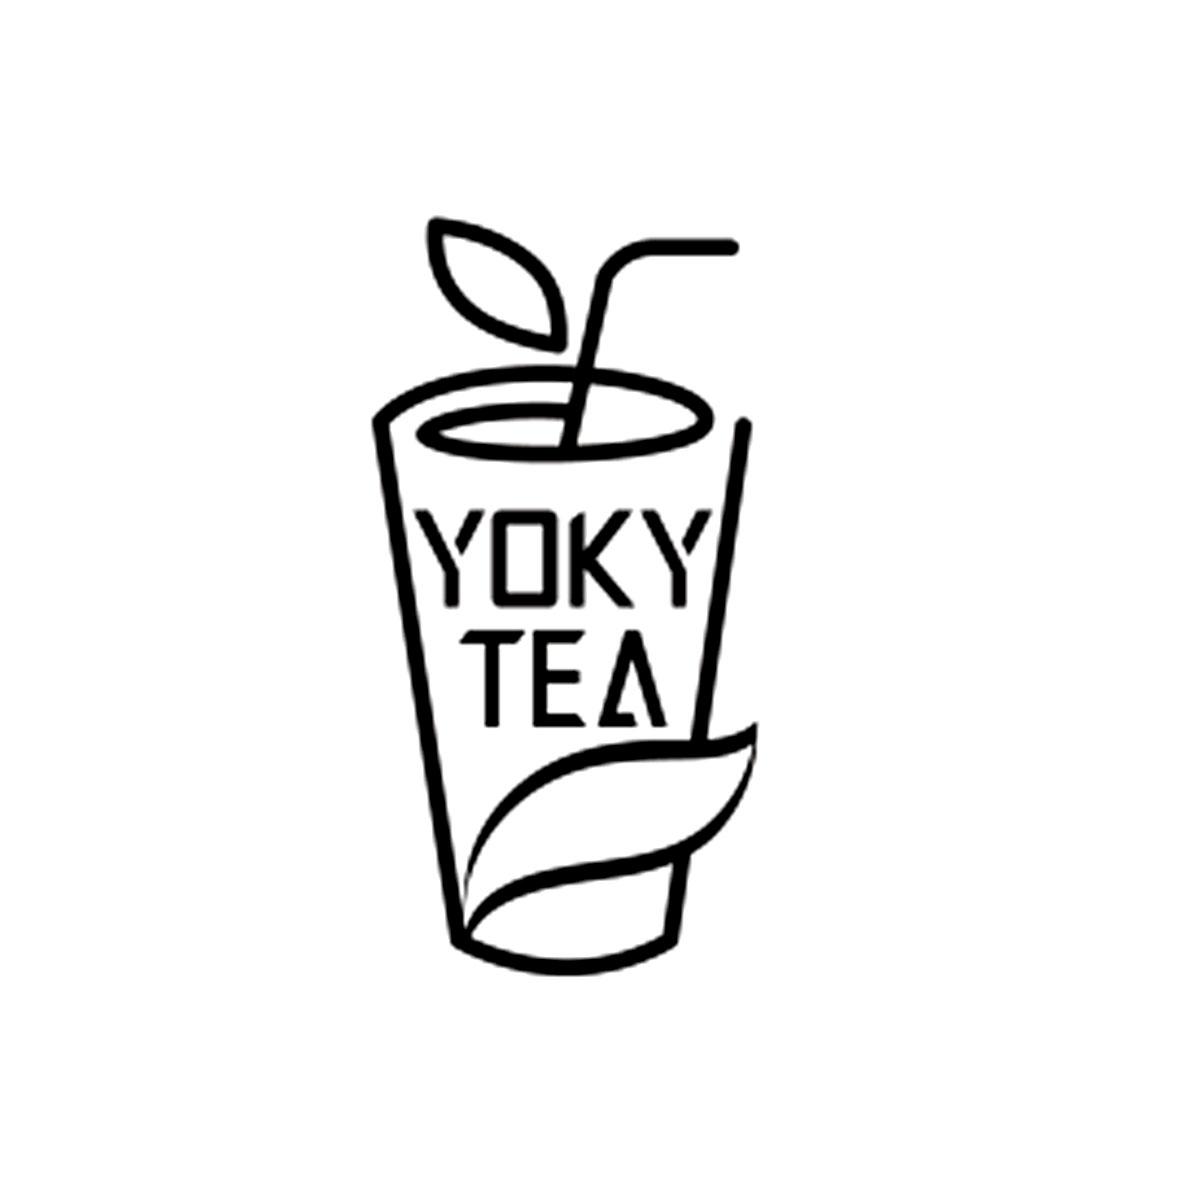 yoky tea 商标公告